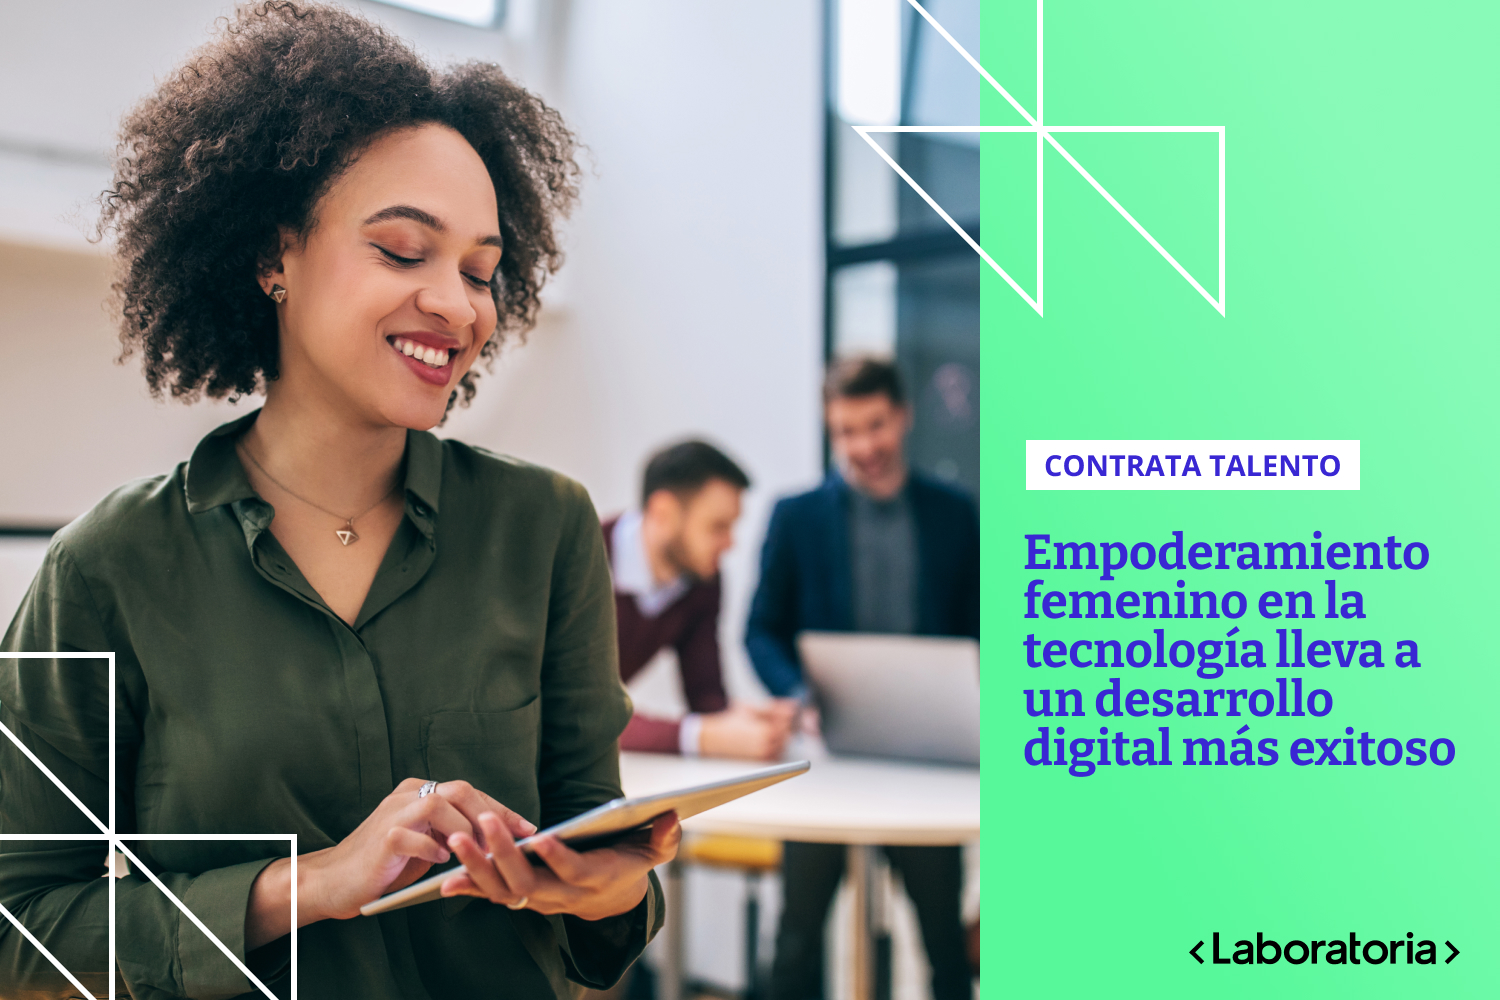 El acelerado crecimiento del sector tech y una visión cada vez menos estigmatizada de los roles sociales de cada género, nos ha permitido a las mujeres un importante avance laboral y profesional dentro del mundo tecnológico.